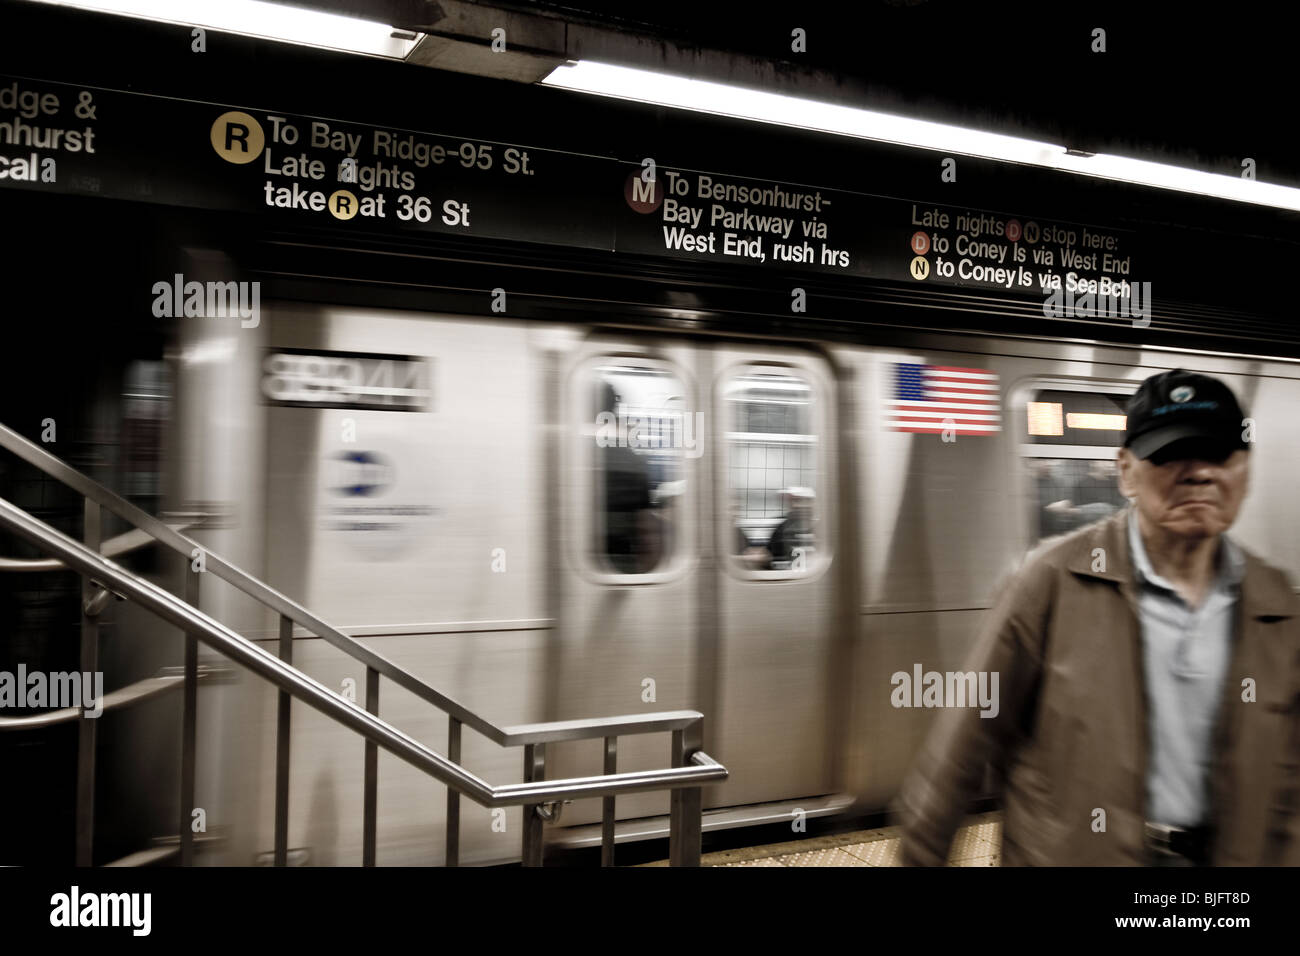 La estación de metro y tren en movimiento a los pasajeros de edad avanzada - New York City - Septiembre 2009 Foto de stock